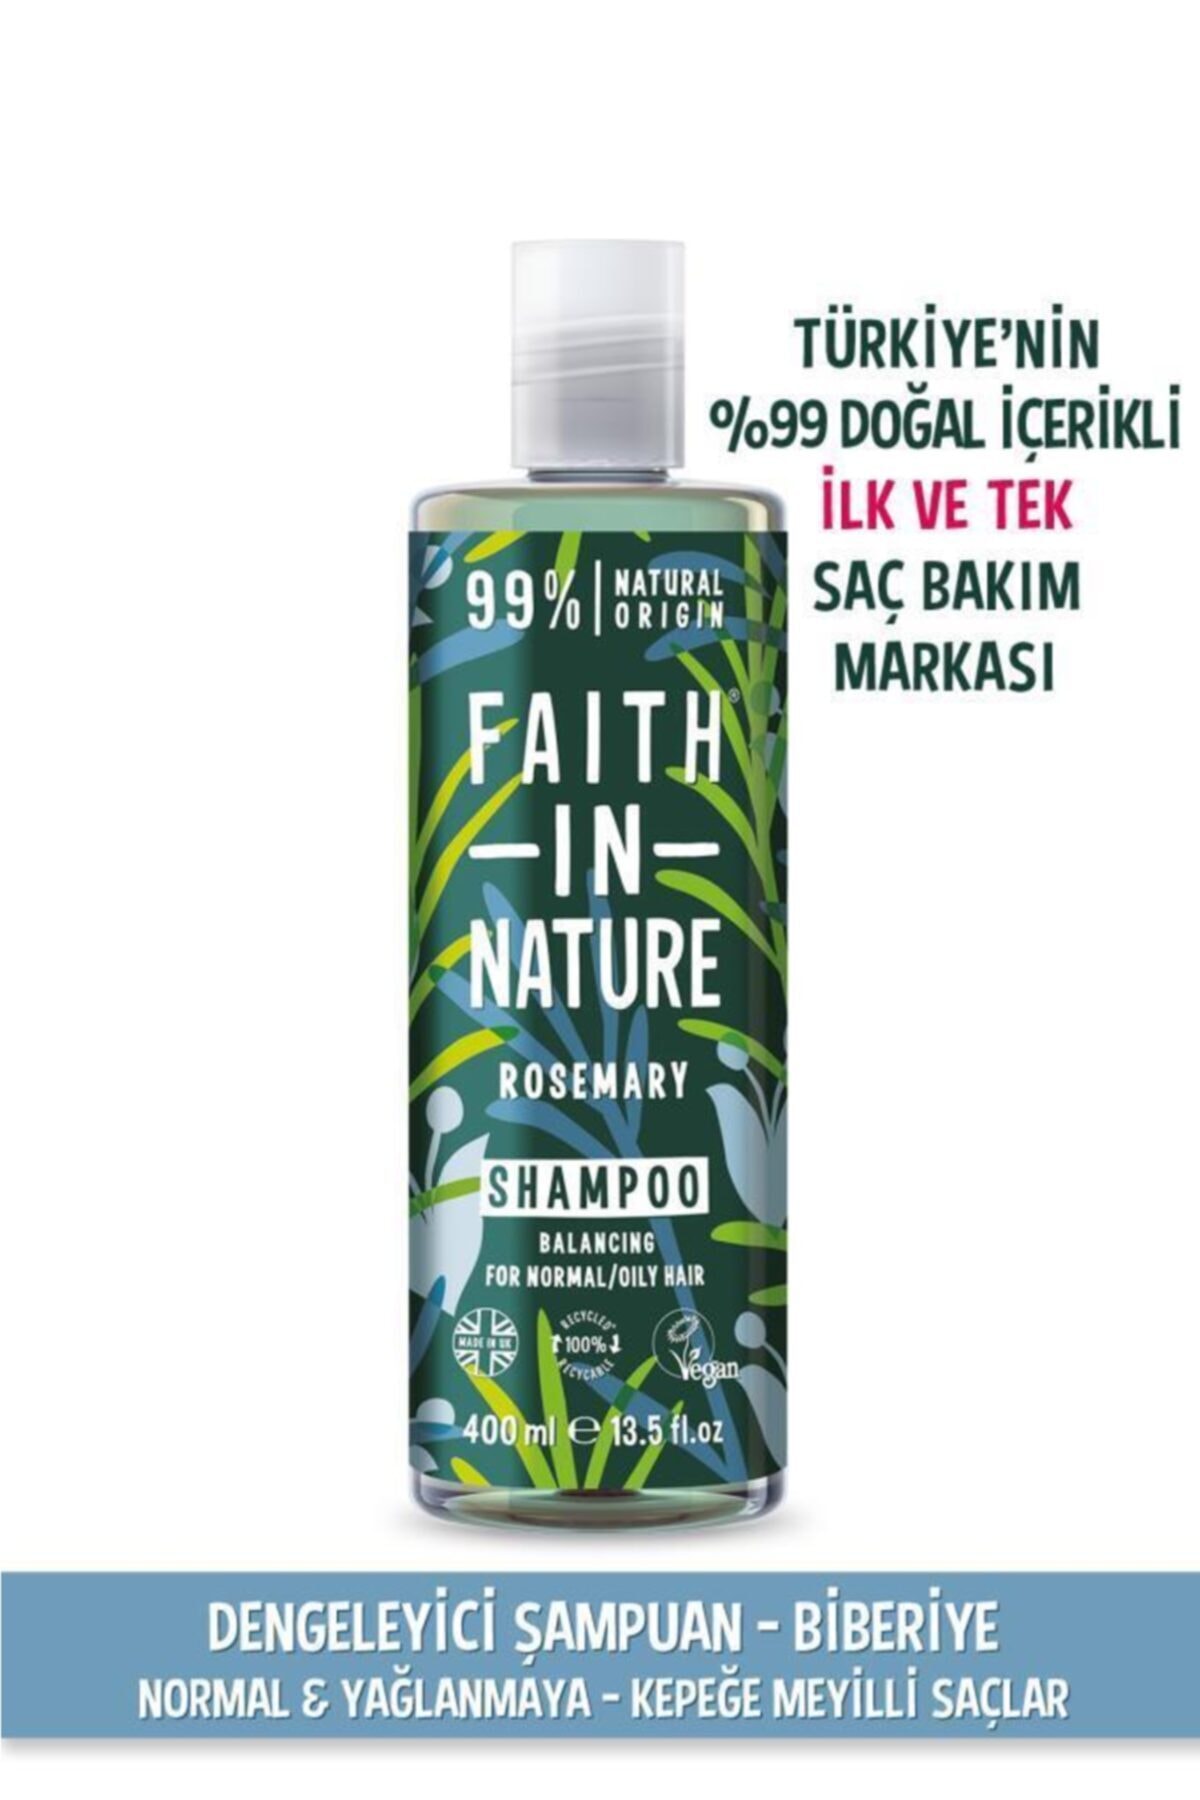 Faith In Nature %99 Doğal Dengeleyici Şampuan Biberiye Normal&Yağlanmaya-Kepeğe Meyilli Saçlar İçin